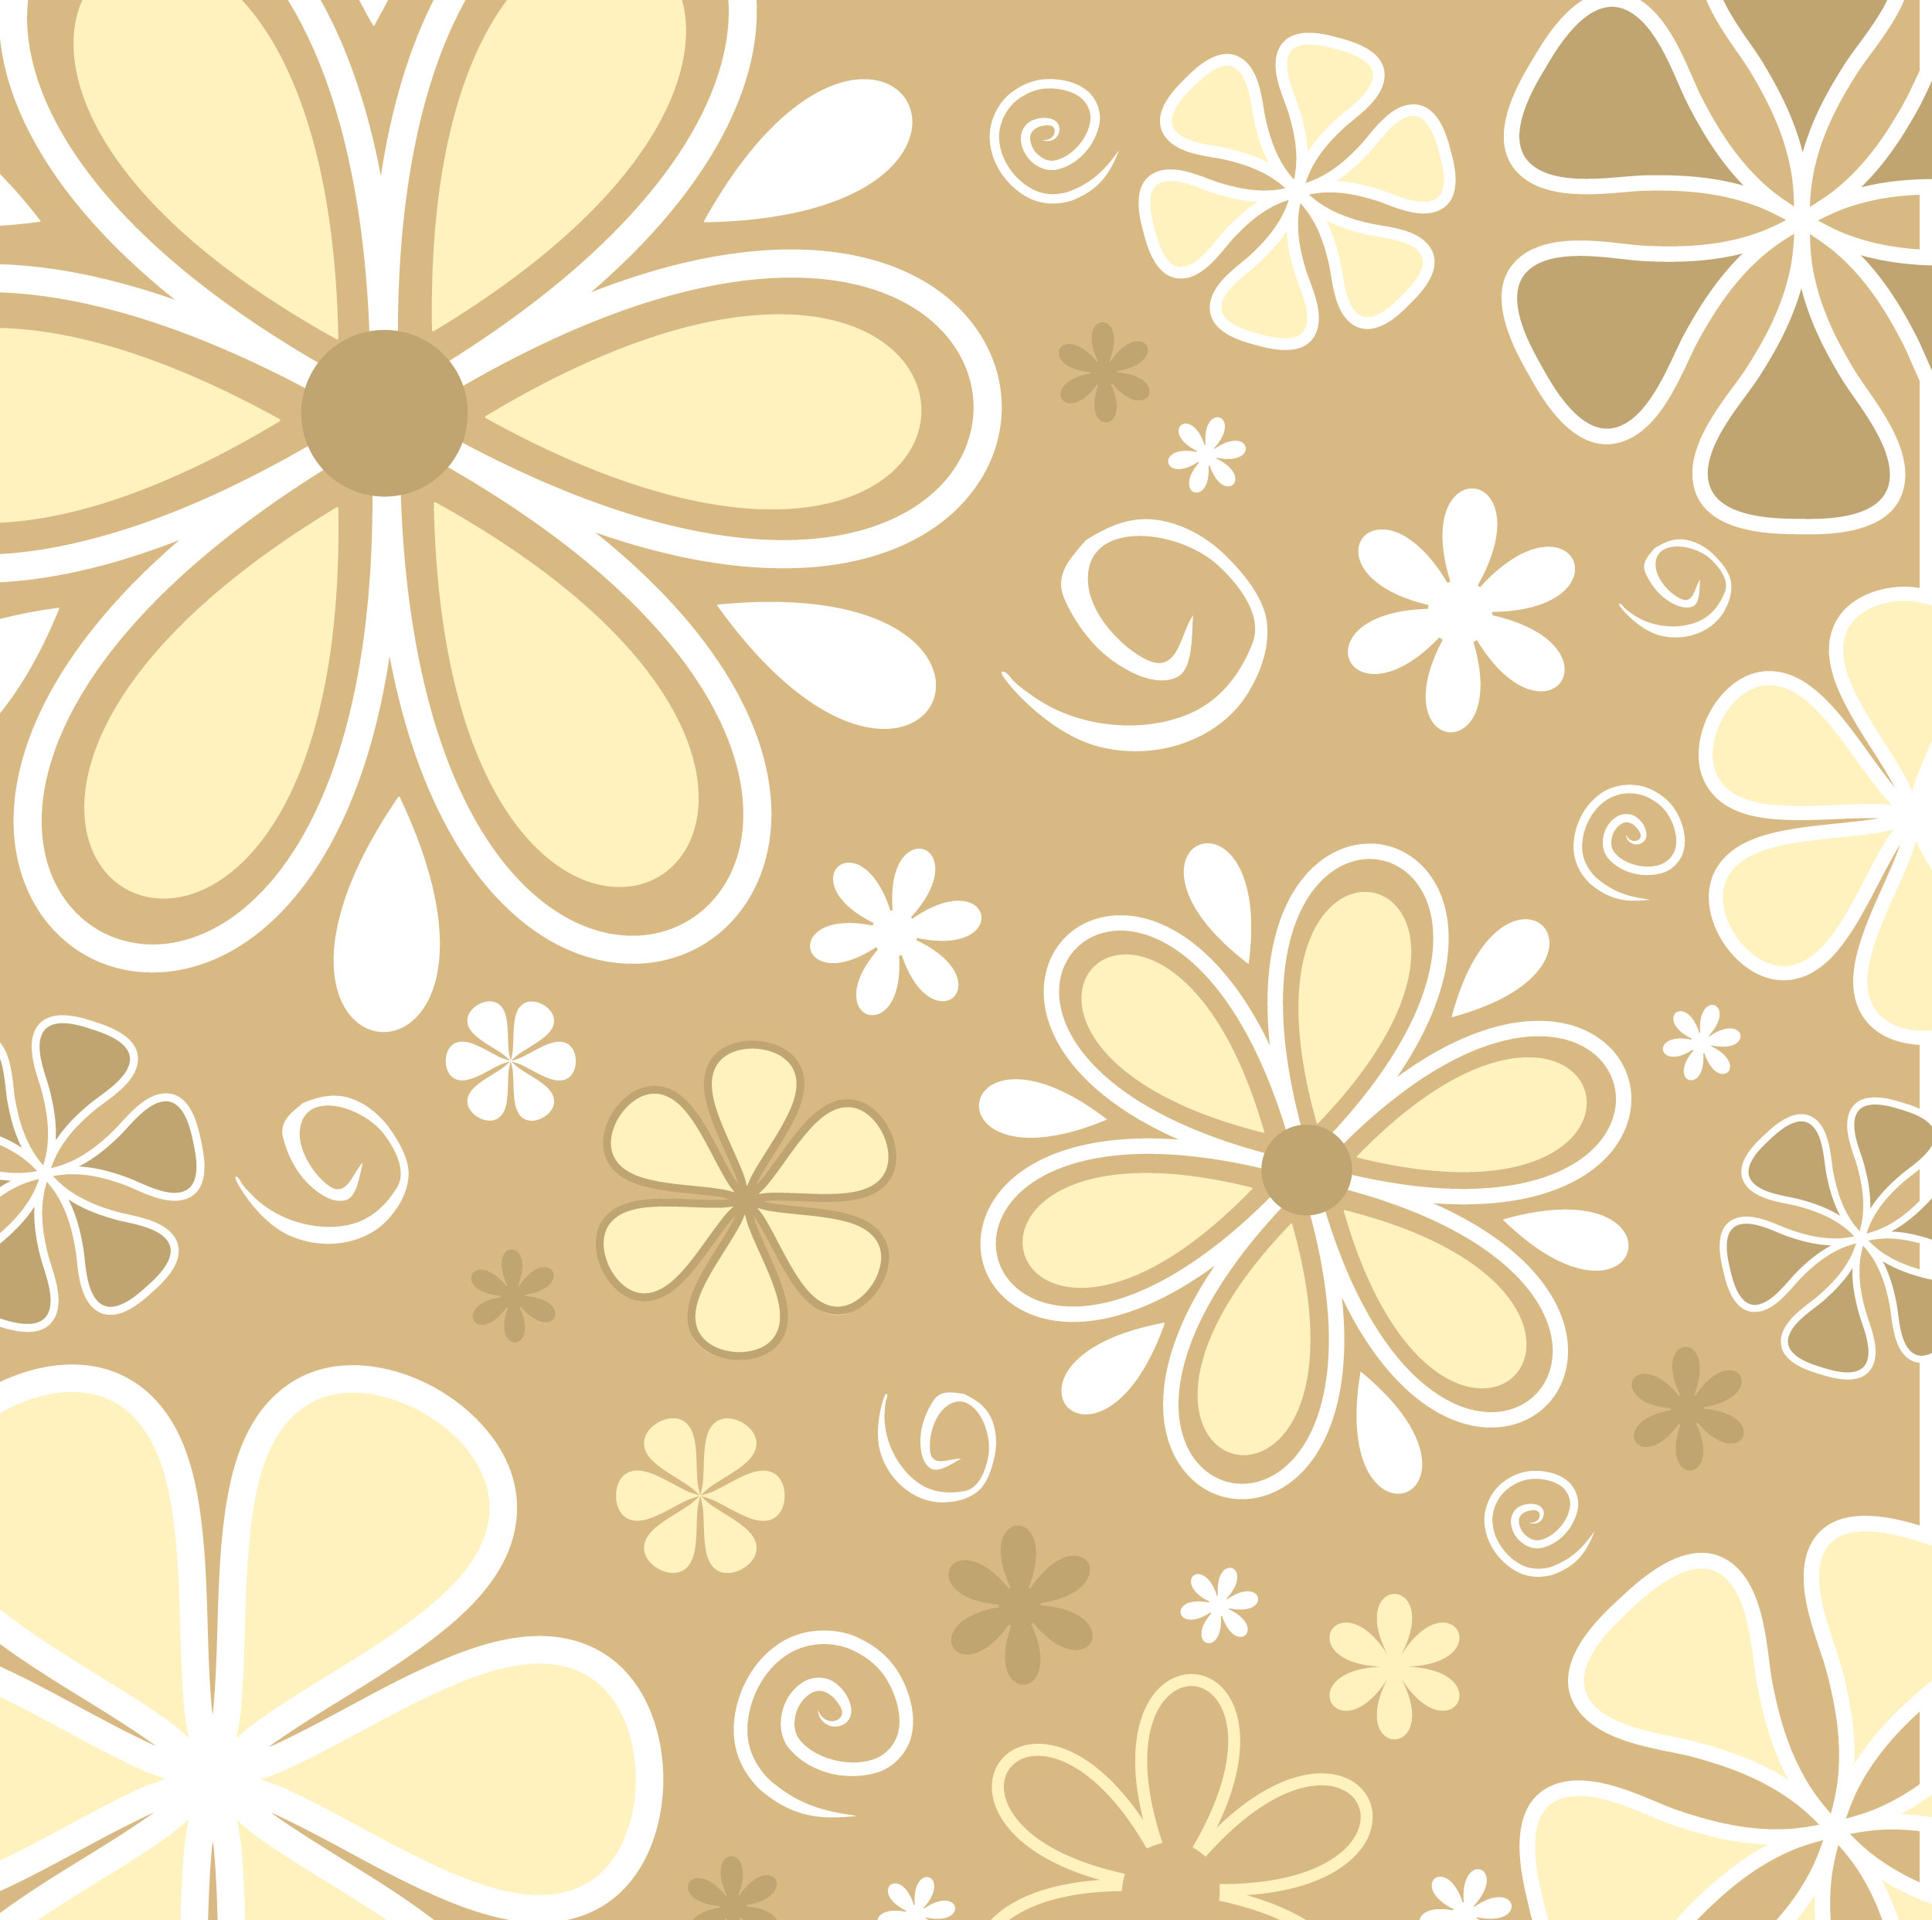 壁紙 背景イラスト 花の模様 柄 パターン No 118 ポップ ブラウン